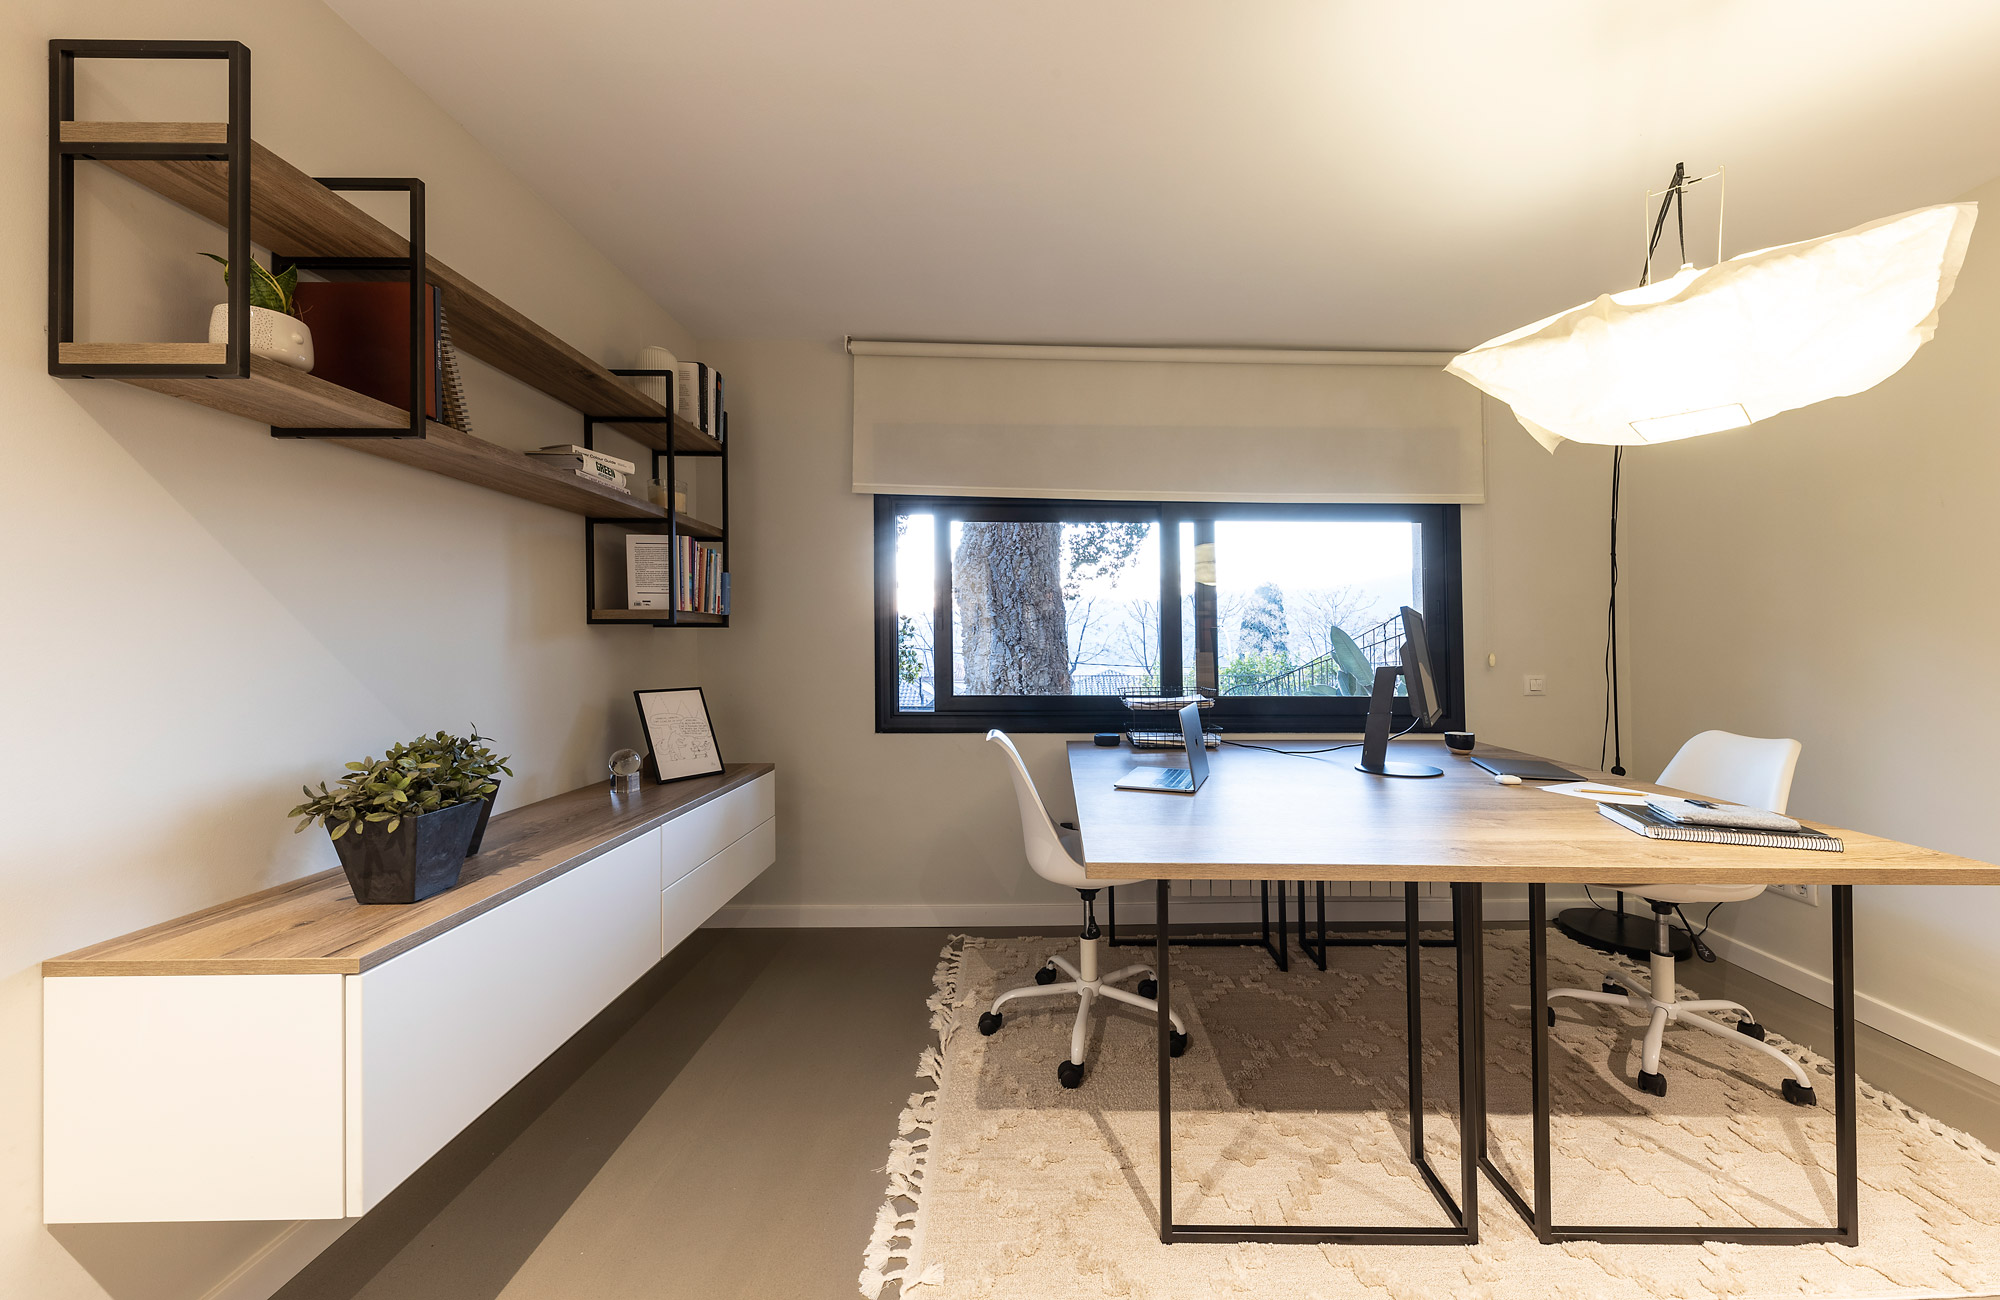 Muebles para la sala de estar y televisión de diseño · ISMOBLE